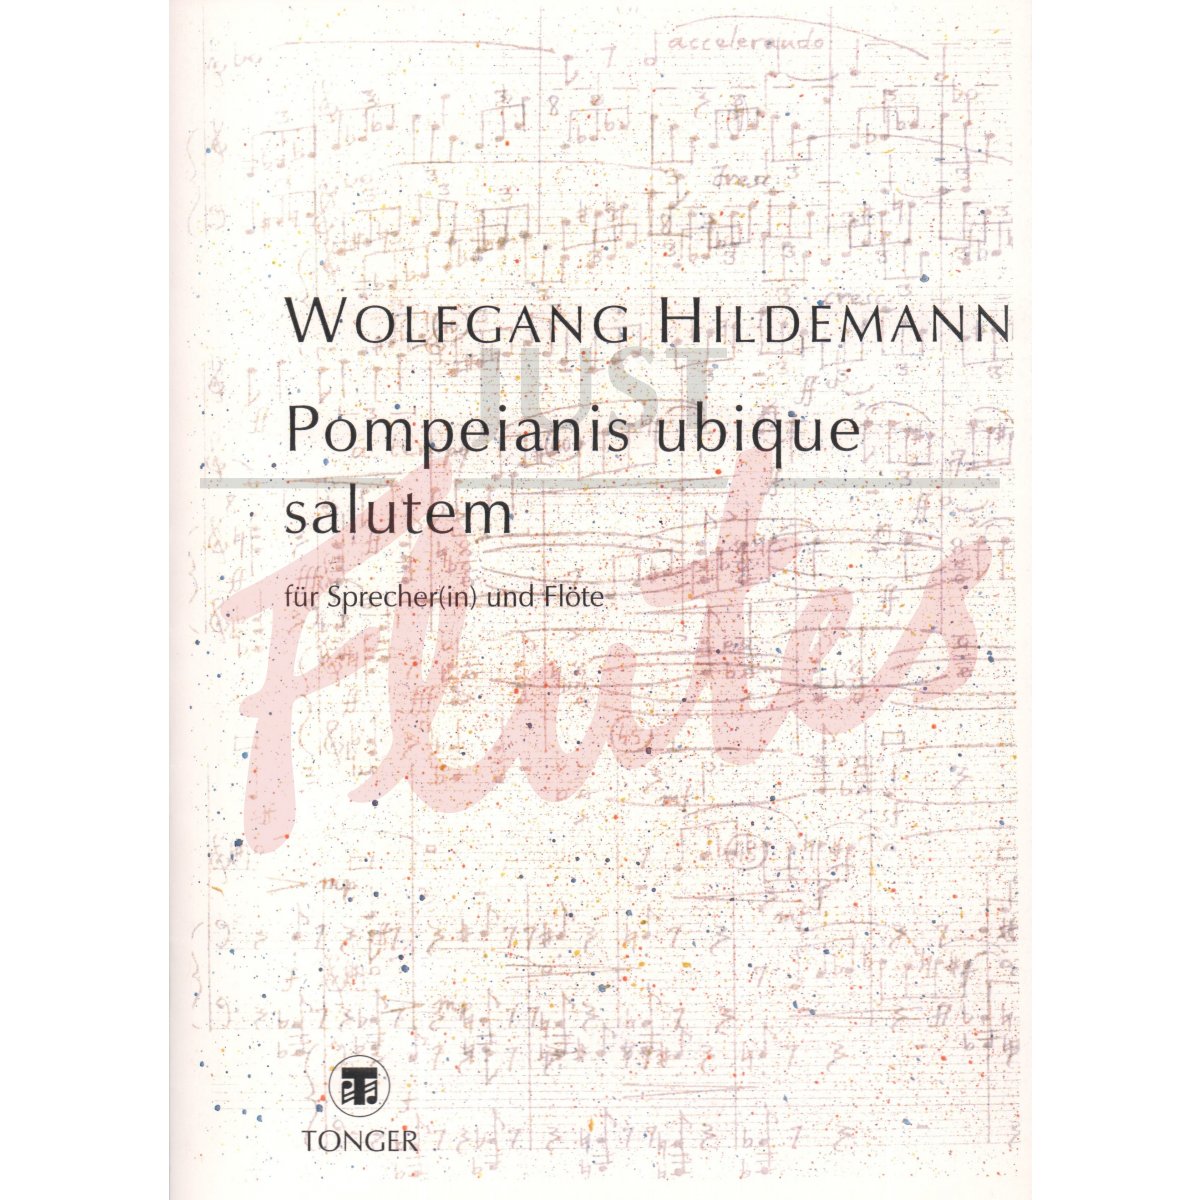 Pompeianis ubique salutem for Flute and Narrator